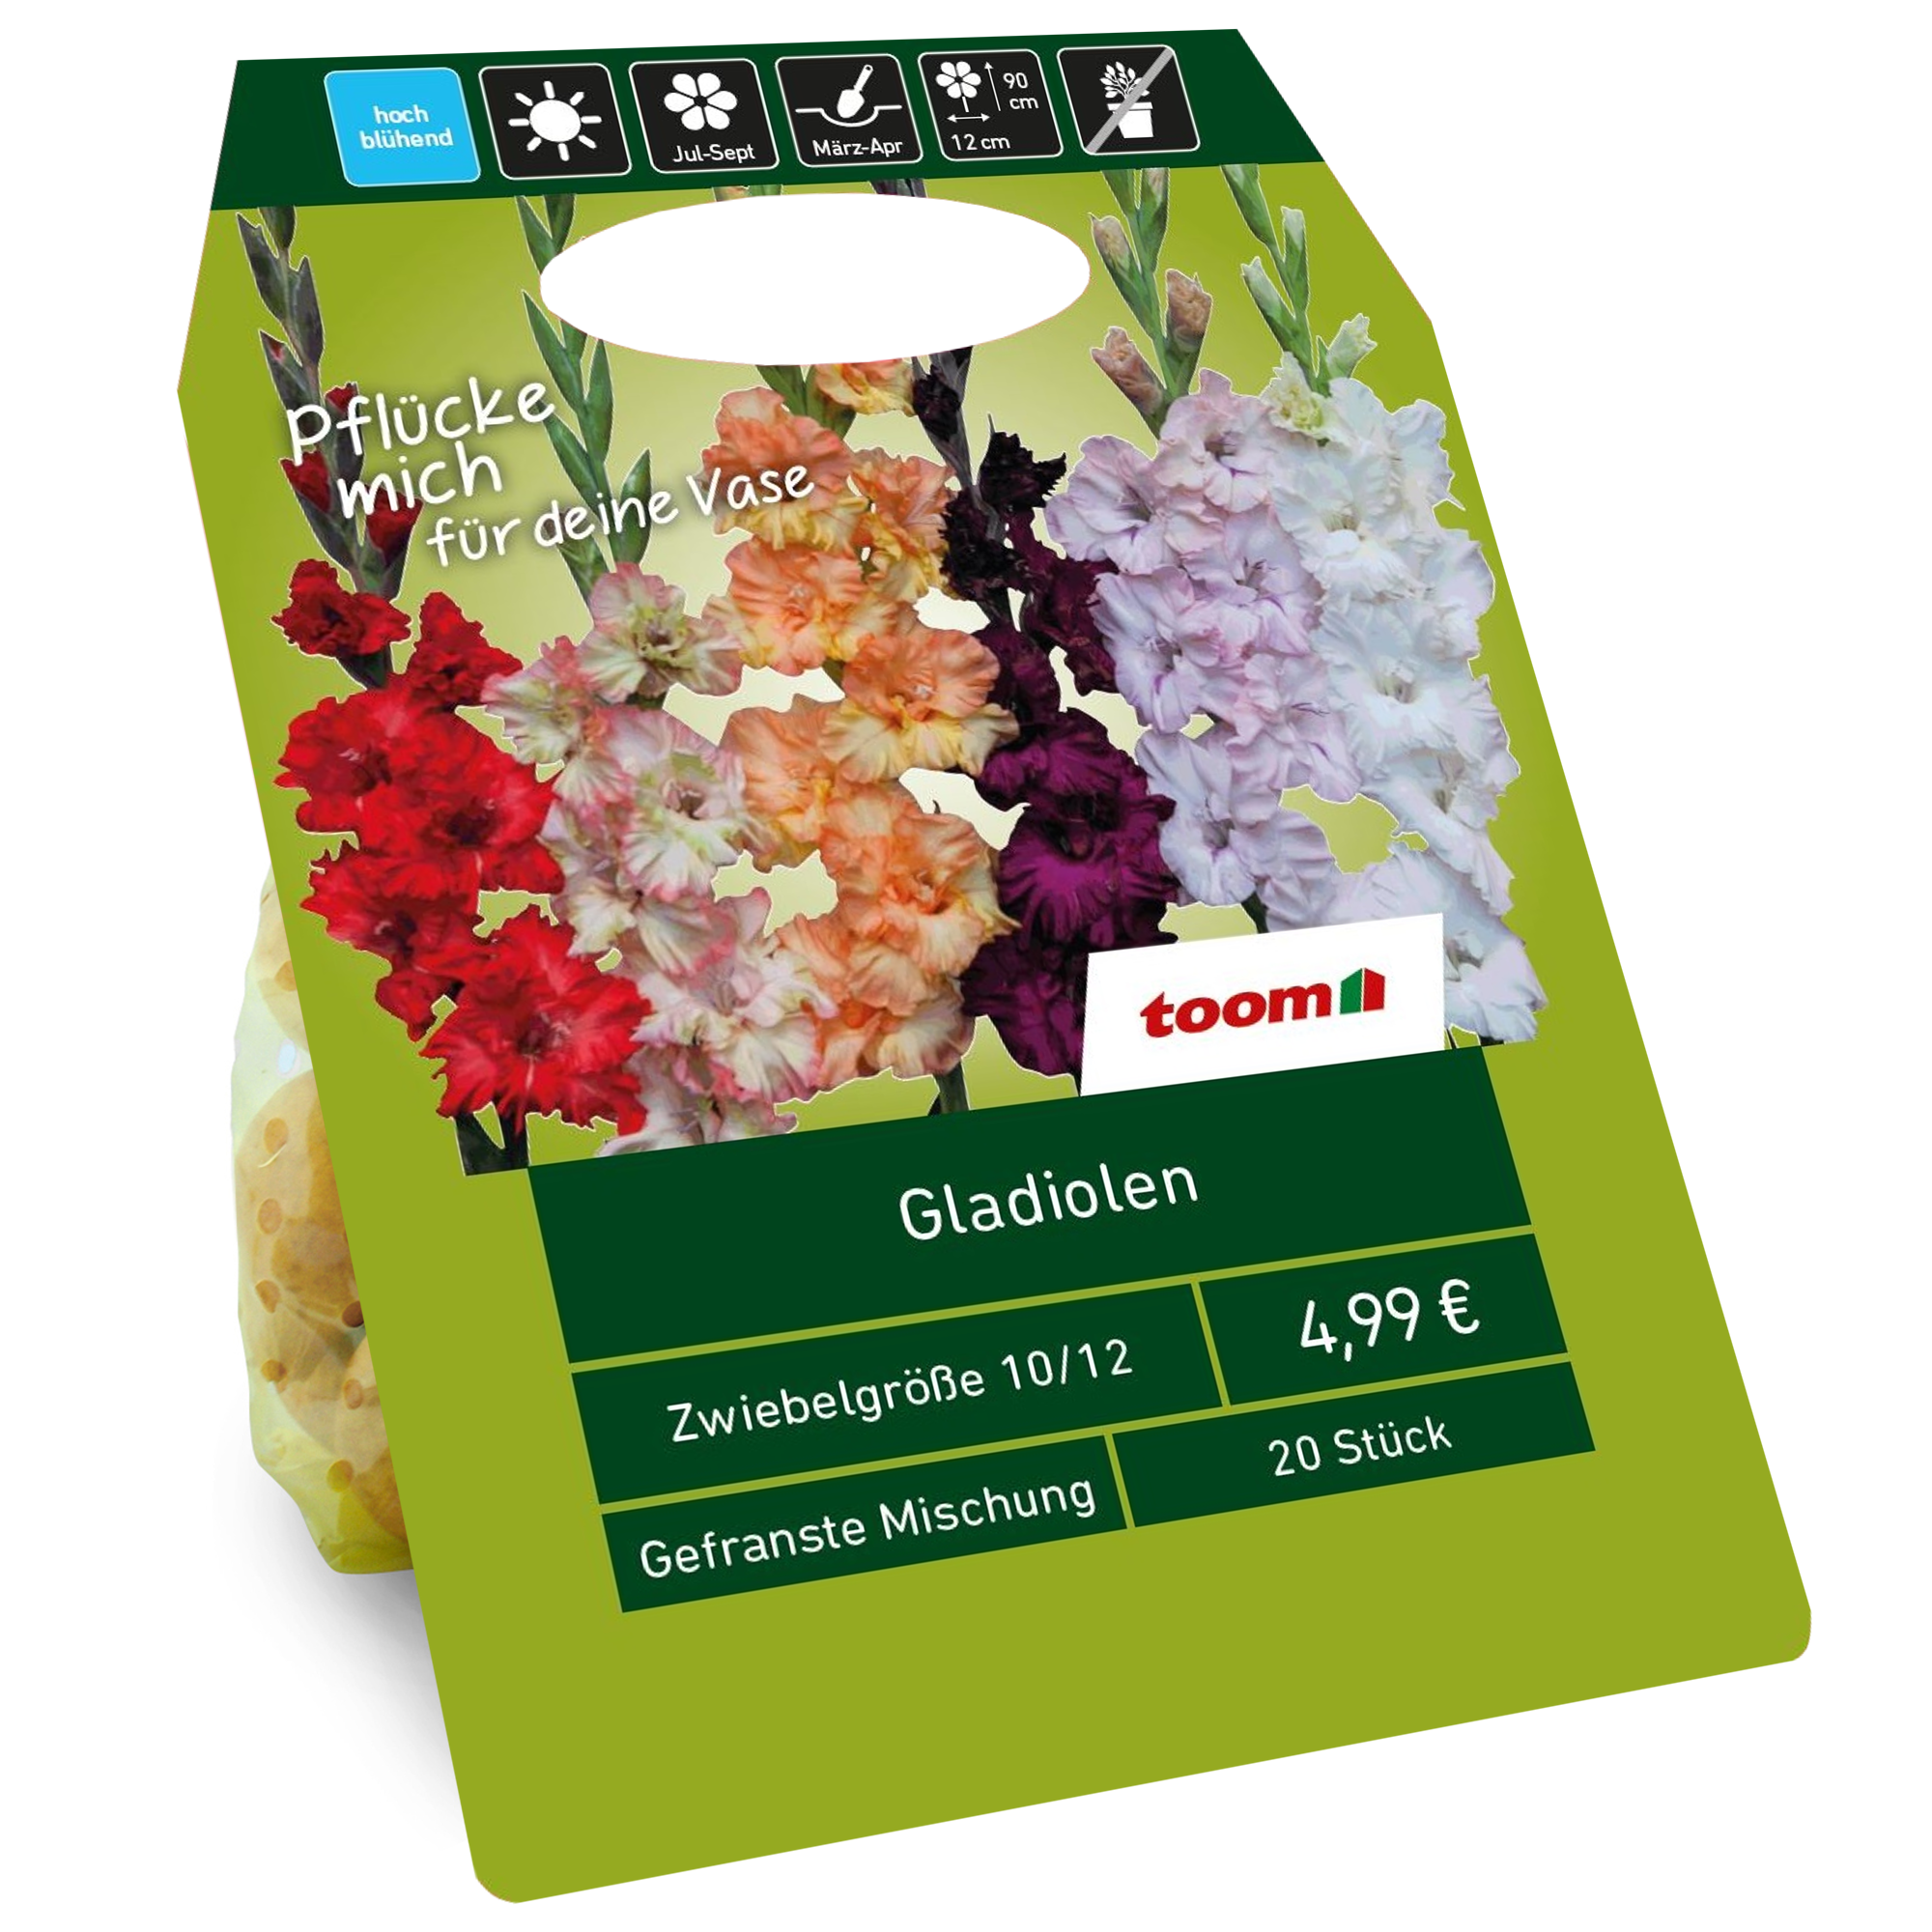 Gladiolen gefranst Mischung 20 Zwiebeln + product picture